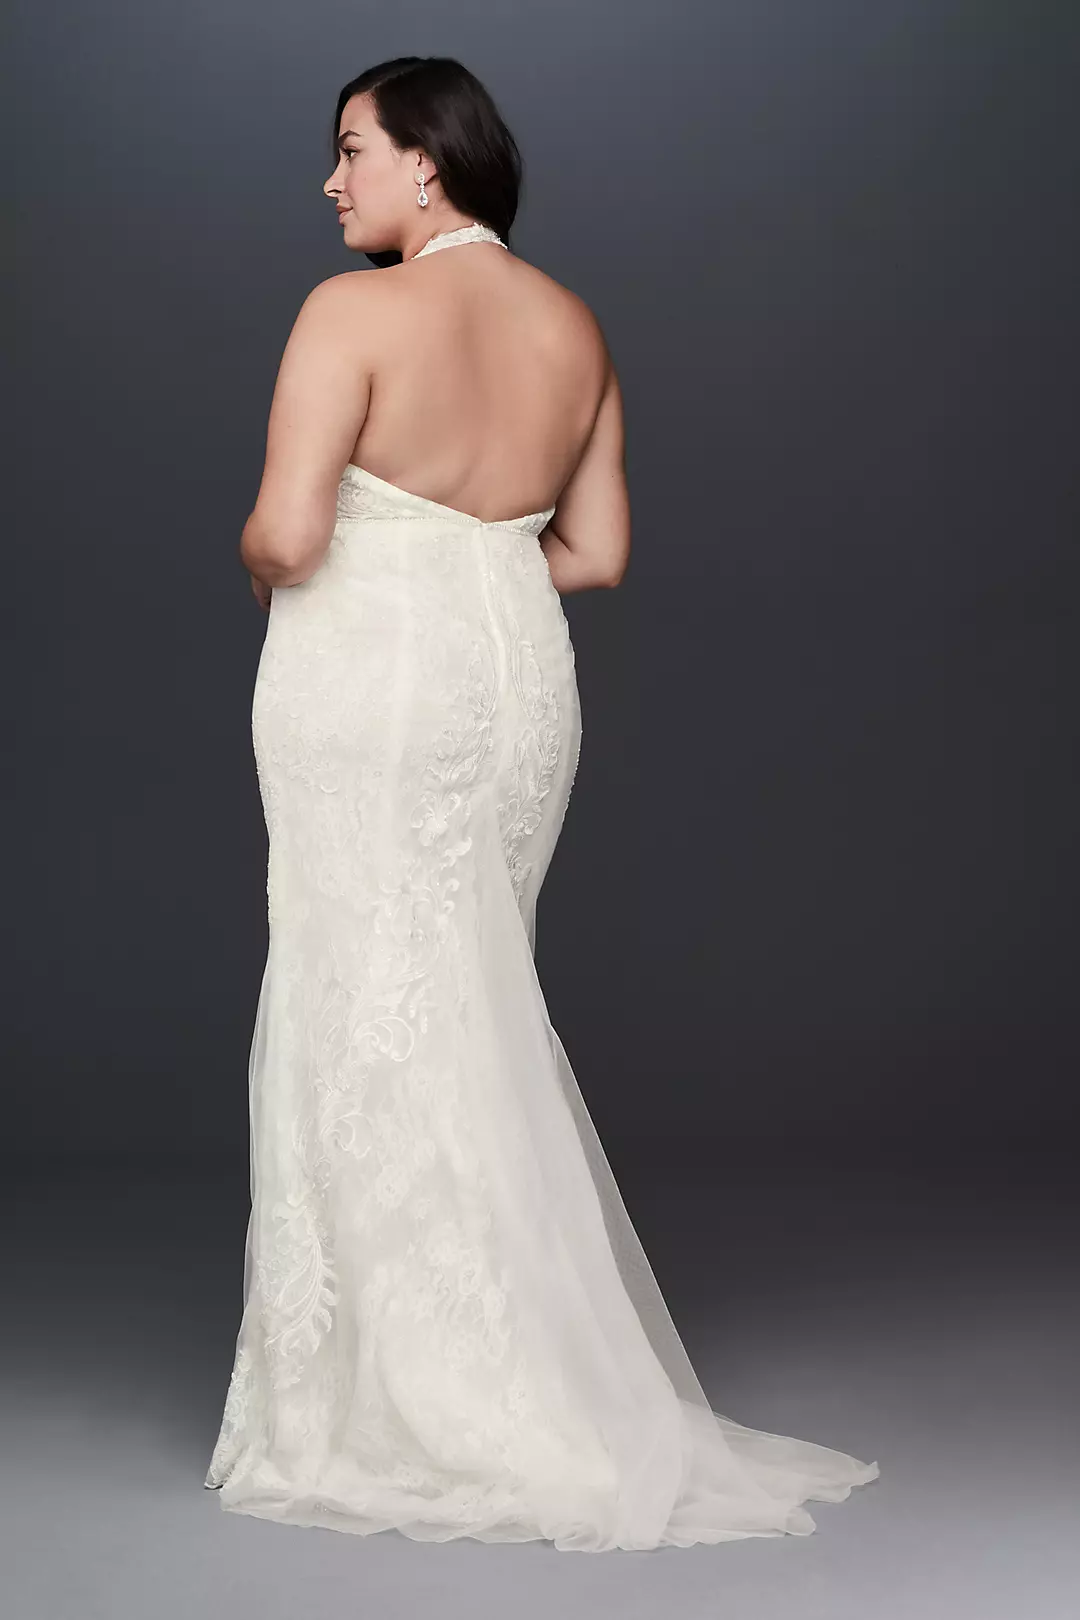 Plunge Neckline Halter Plus Size Wedding Dress Image 2